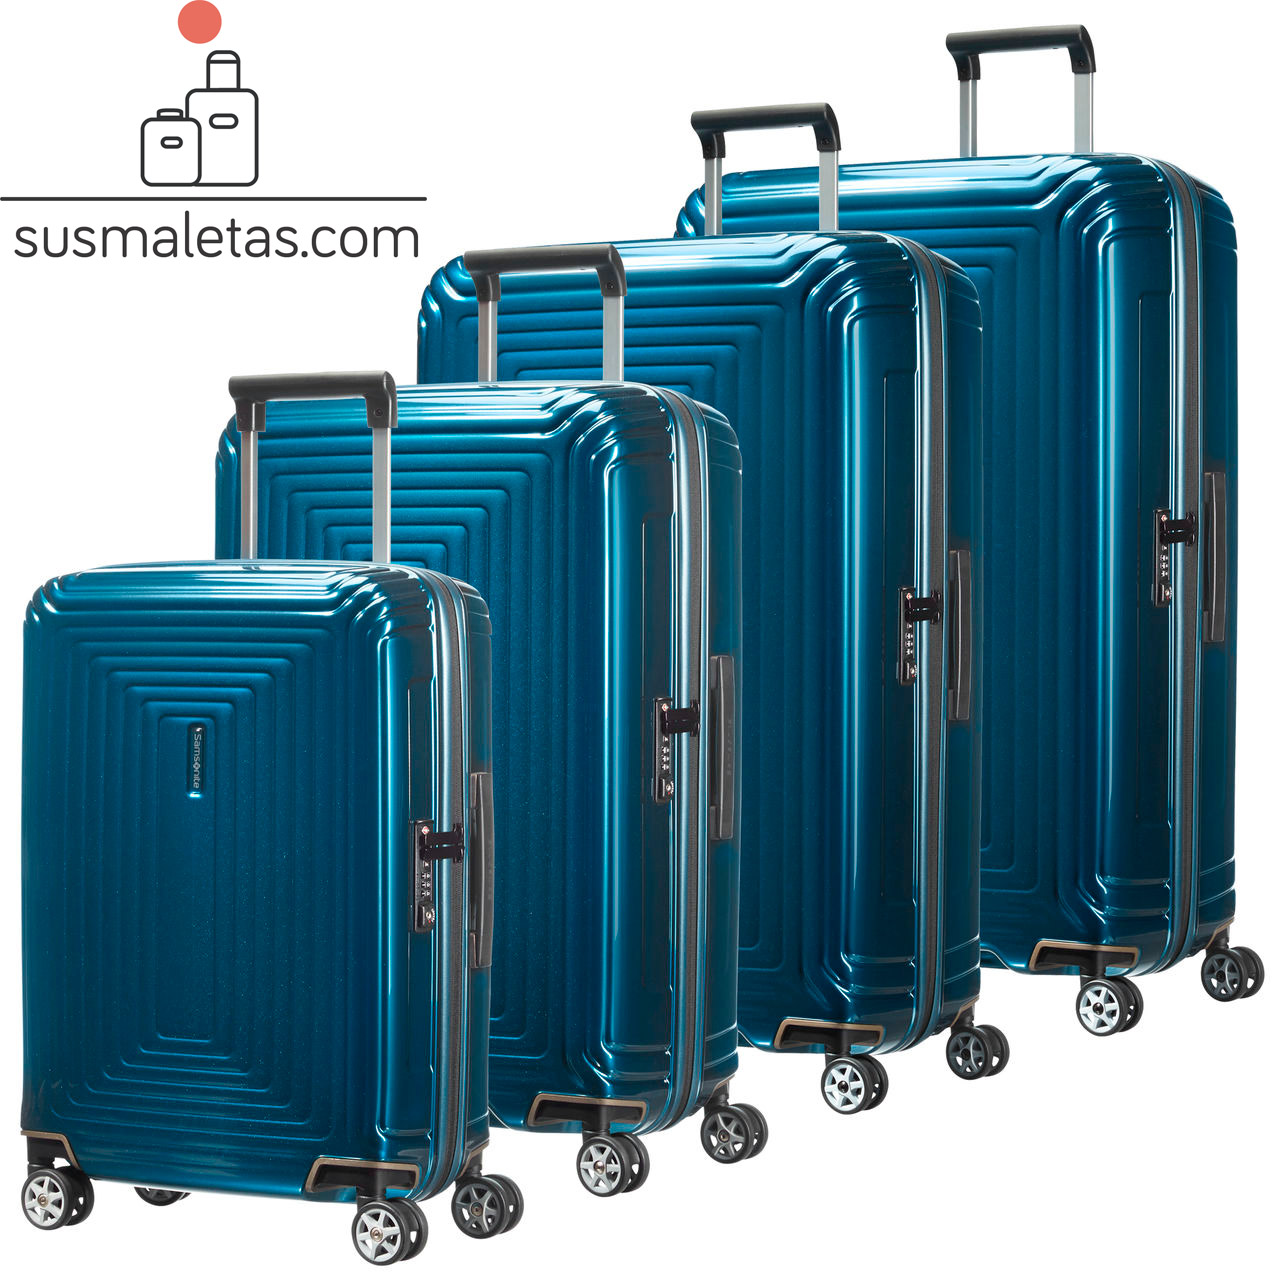 Maletas y equipaje de viaje de tamaño mediano y buena capacidad